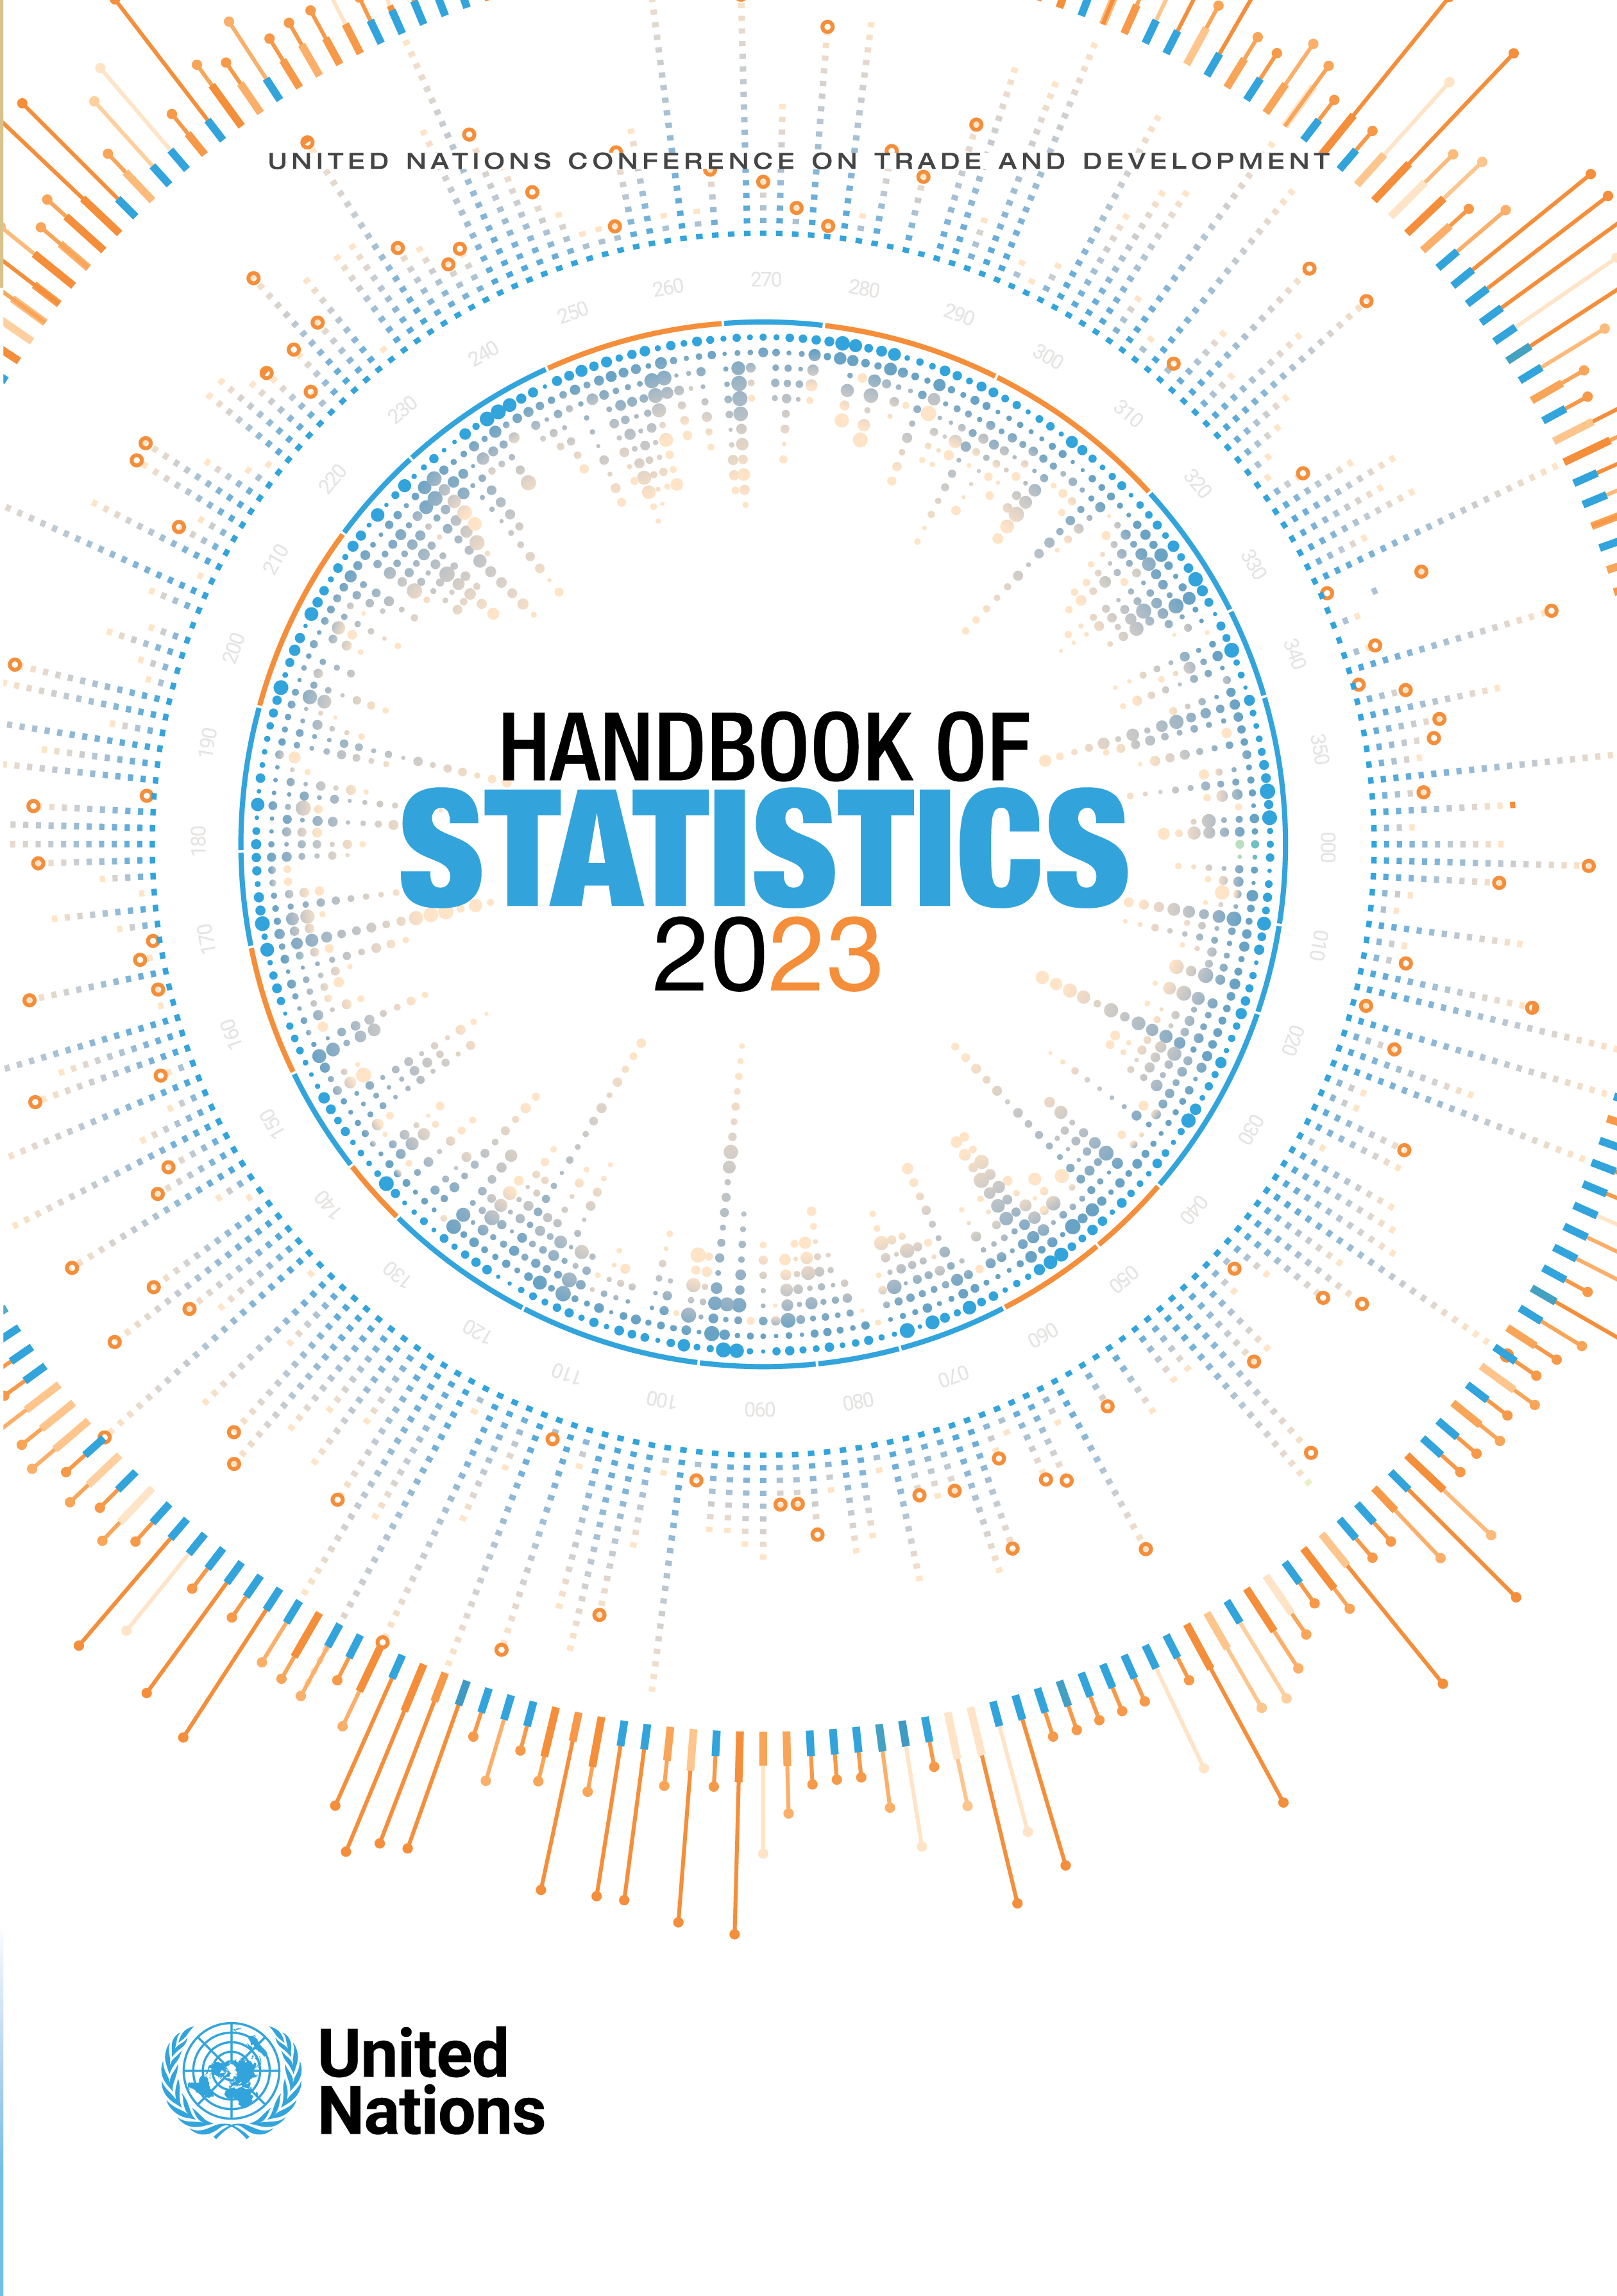 image of UNCTAD Handbook of Statistics 2023